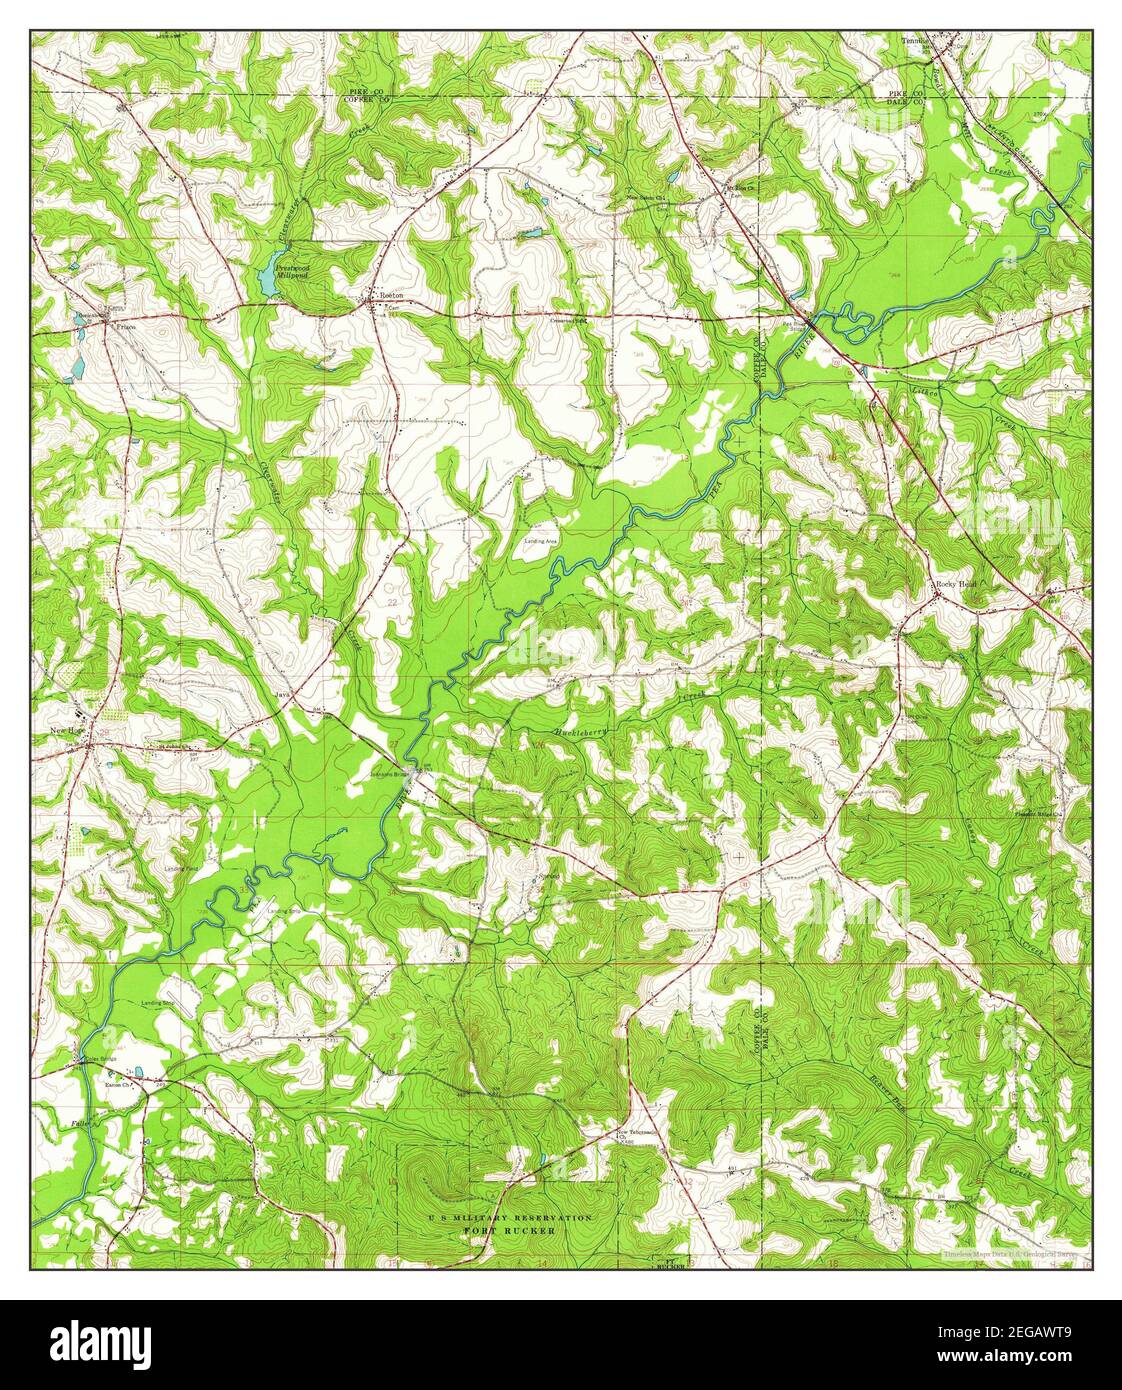 Brundidge SE, Alabama, map 1960, 1:24000, United States of America by Timeless Maps, data U.S. Geological Survey Stock Photo